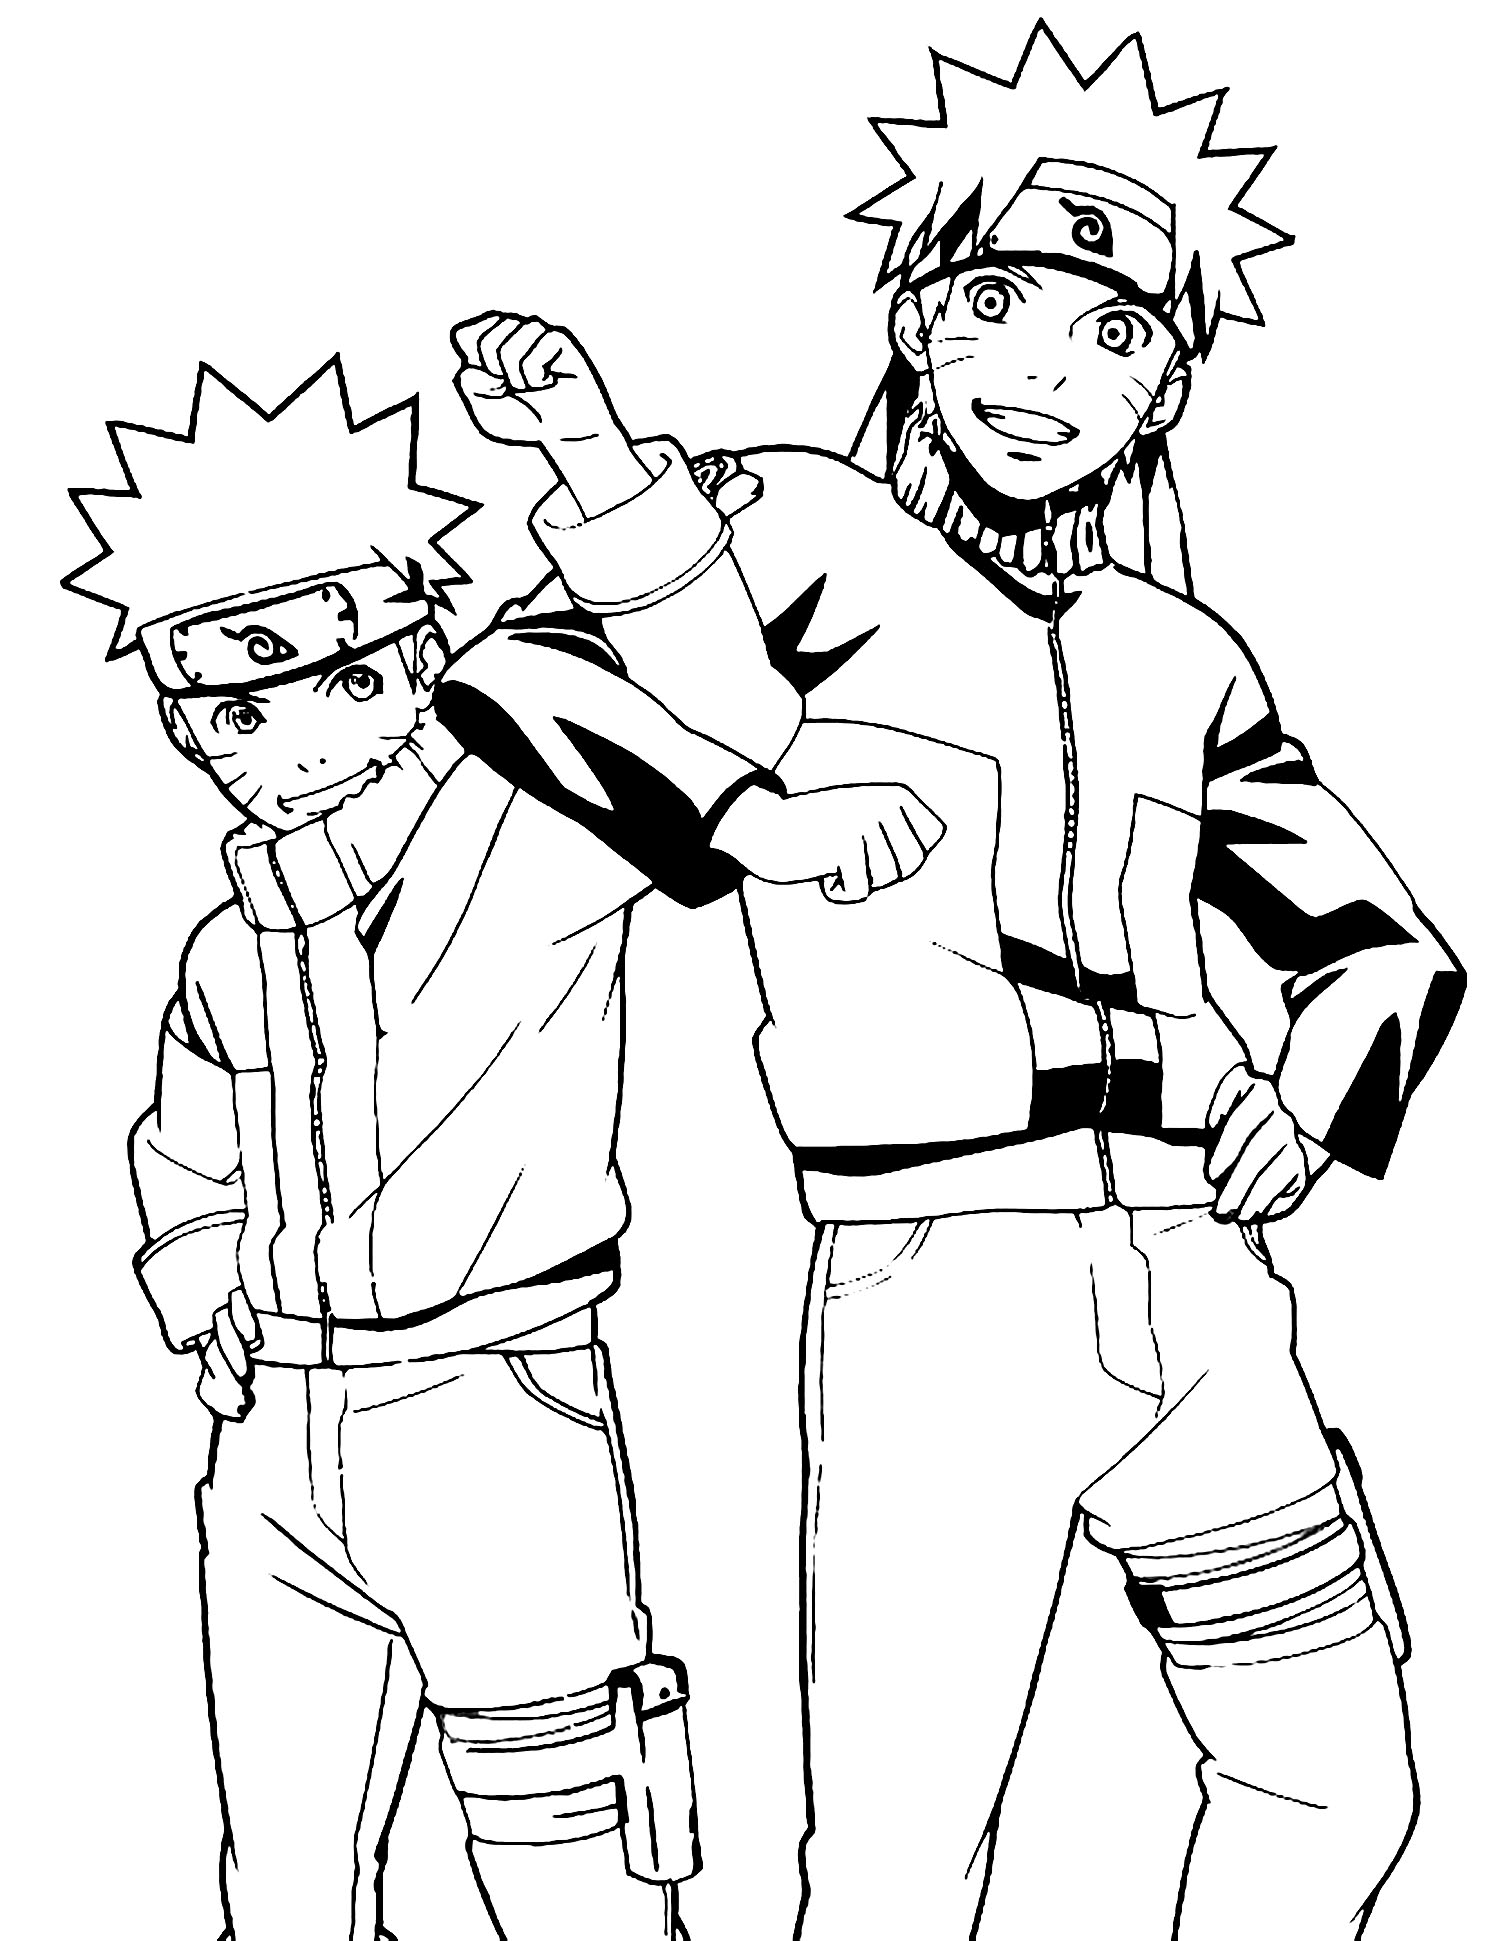 Naruto and Sasuki - Naruto Kids Coloring Pages